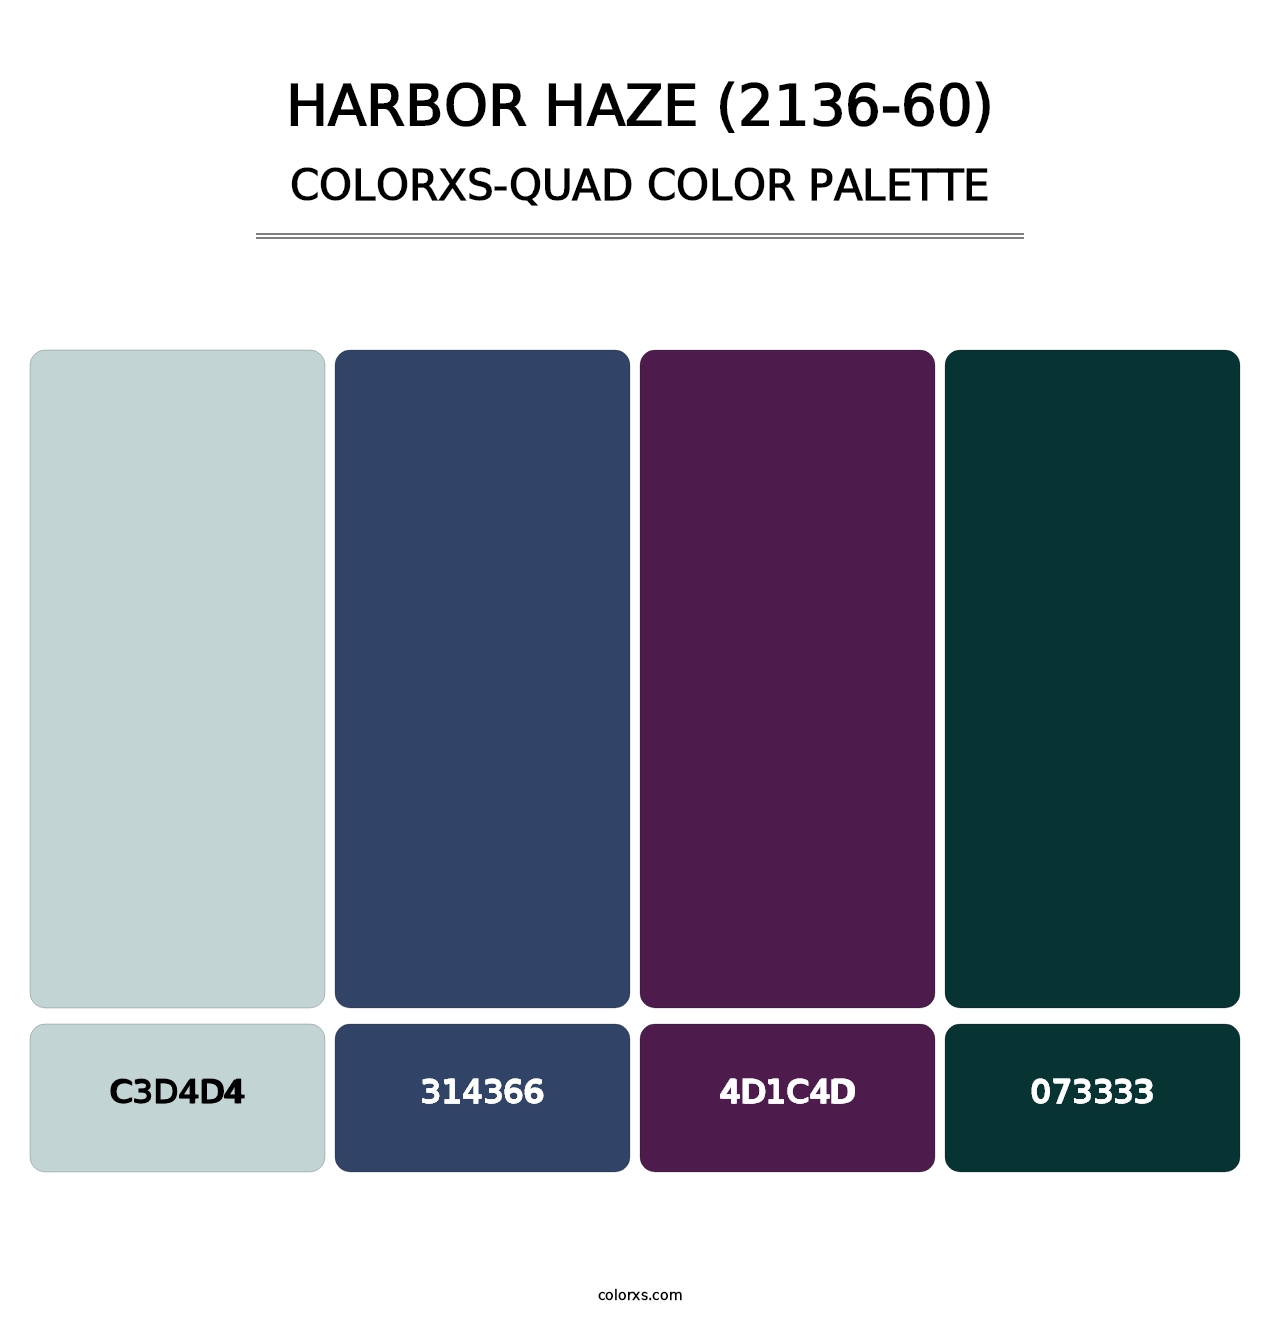 Harbor Haze (2136-60) - Colorxs Quad Palette